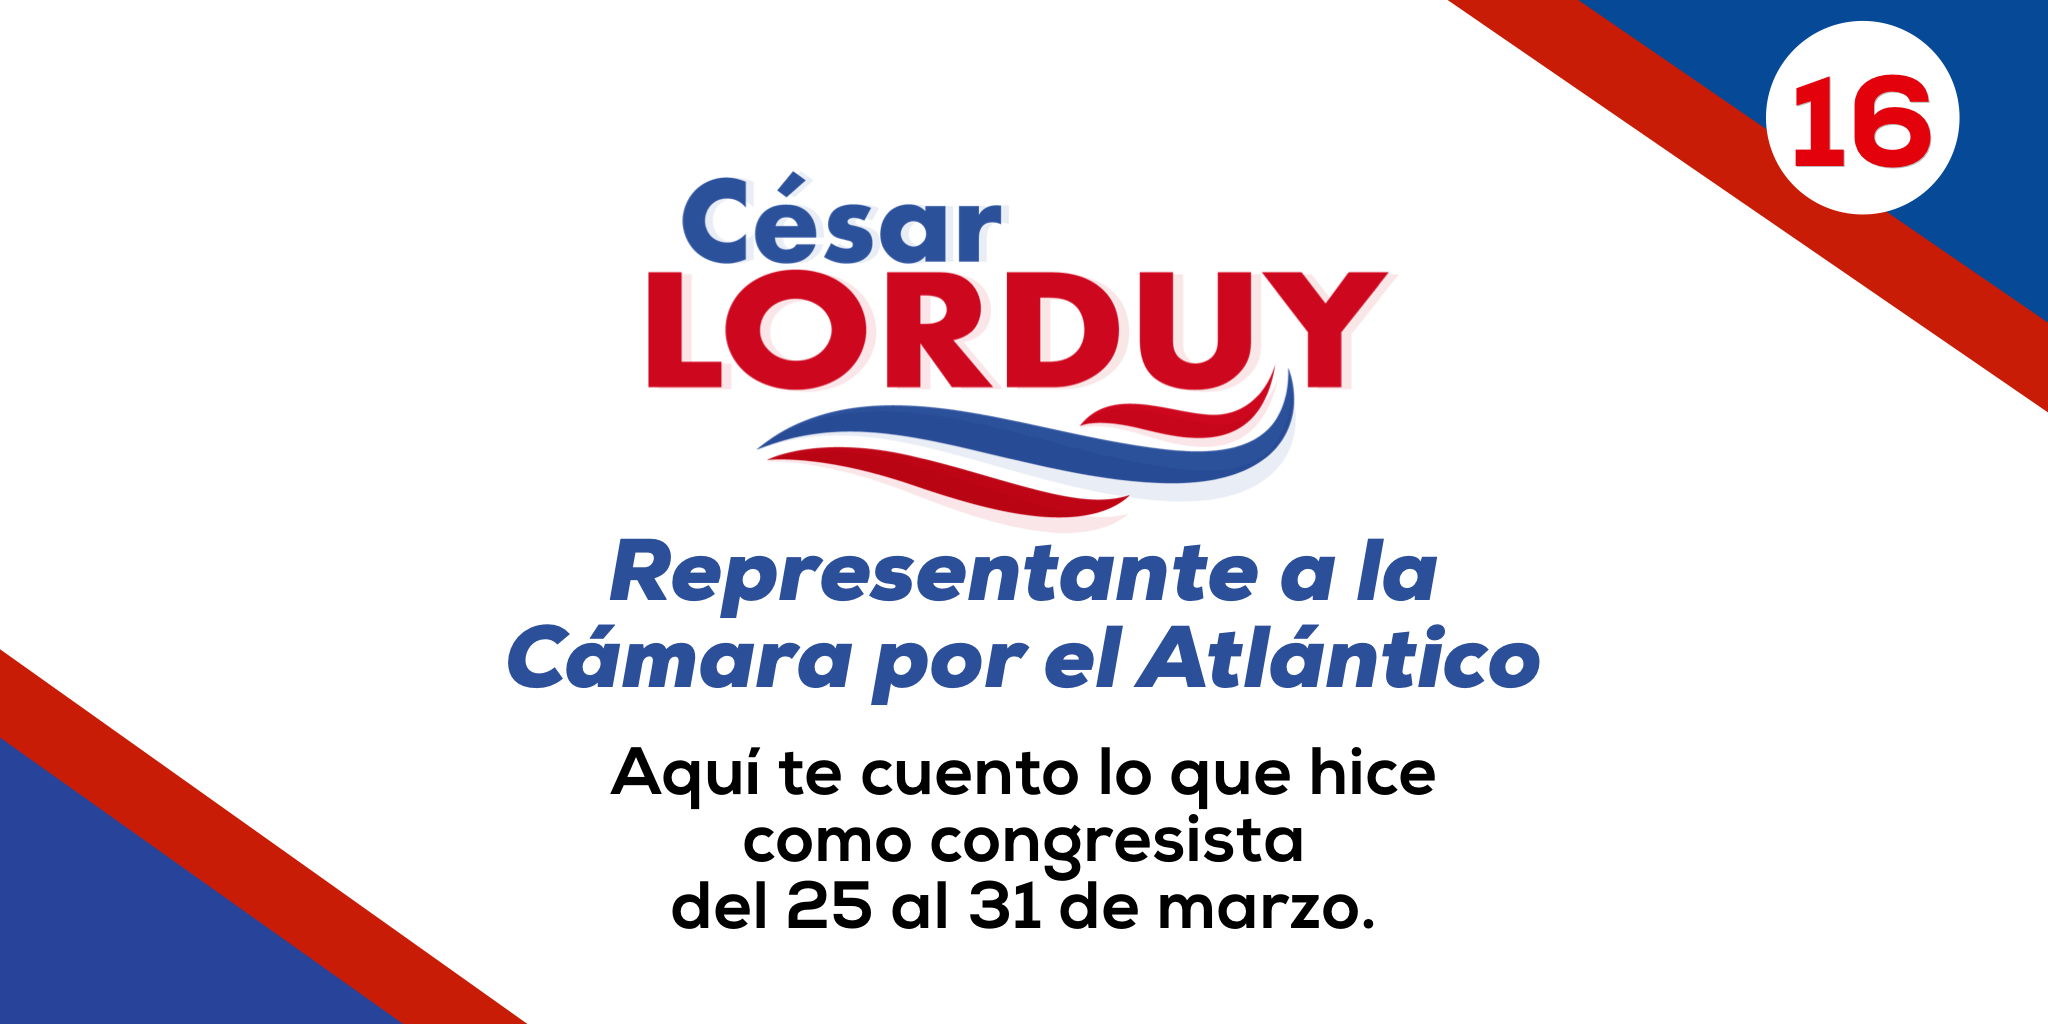 Informe de gestión No. 16 del Representante a la Cámara por el departamento del Atlántico, Cesar Lorduy 1